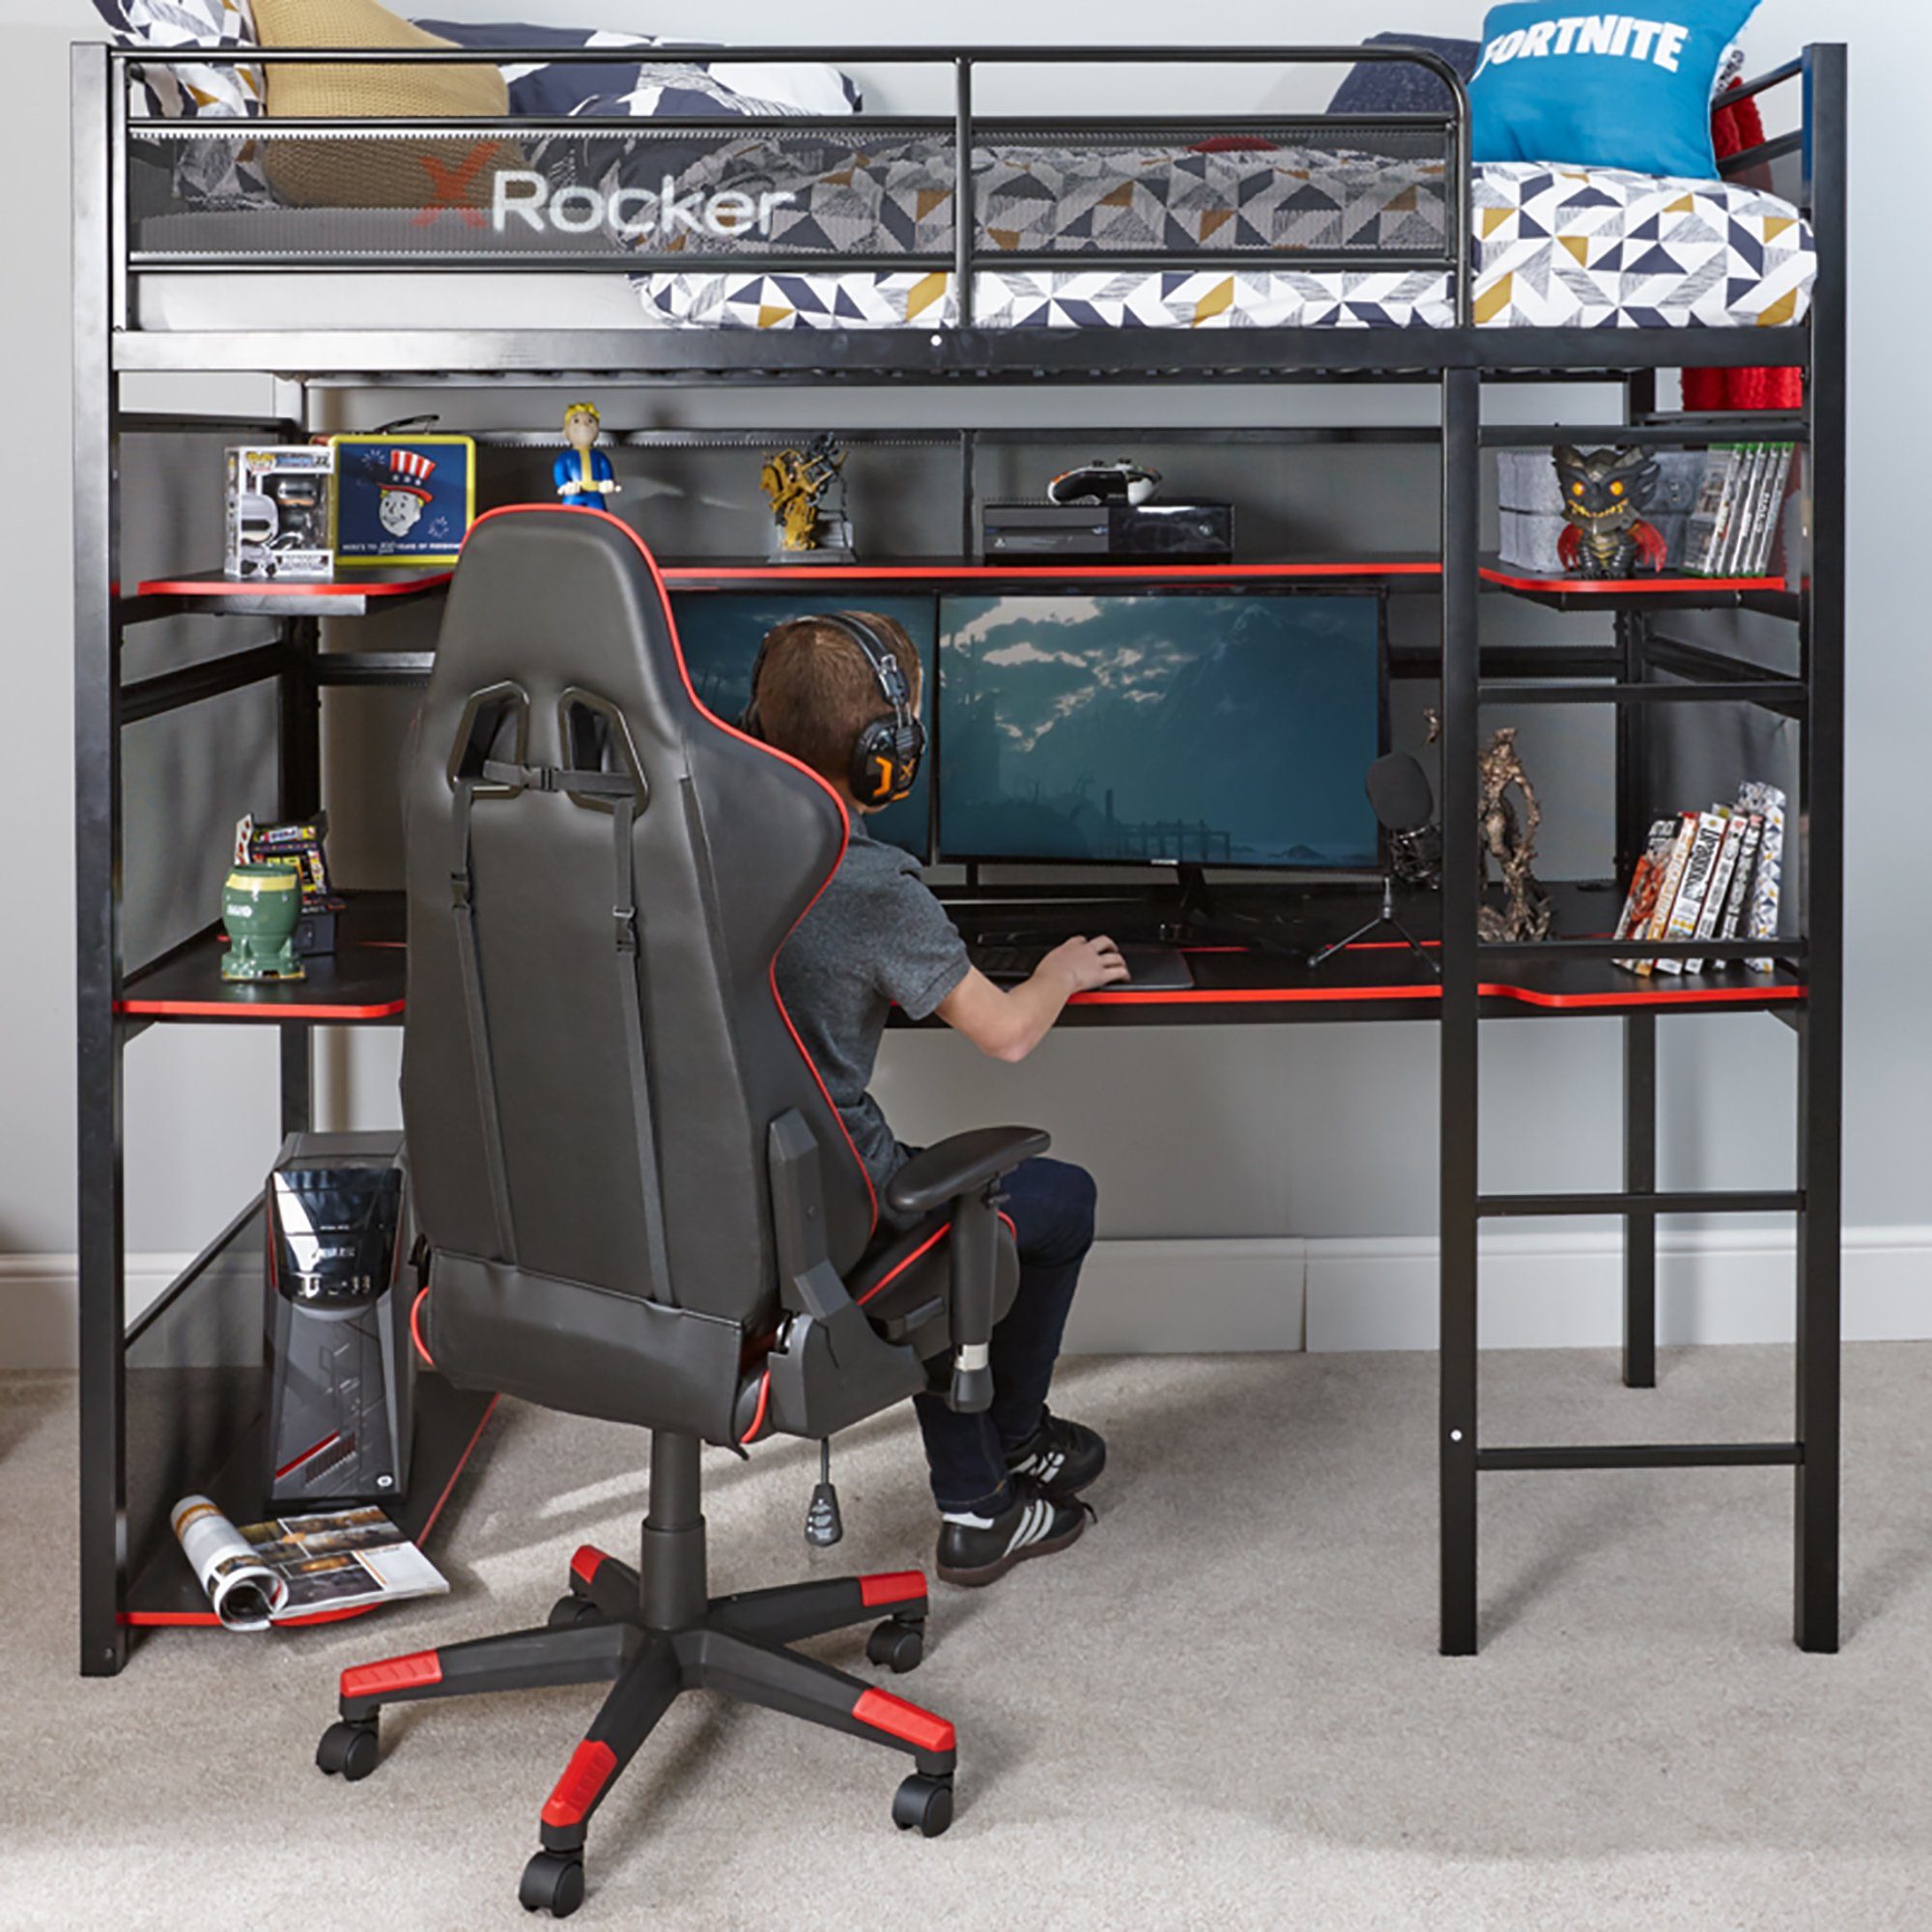 XL-Schreibtisch Hochbett X Rocker Hochbett mit Battlebunk Gaming